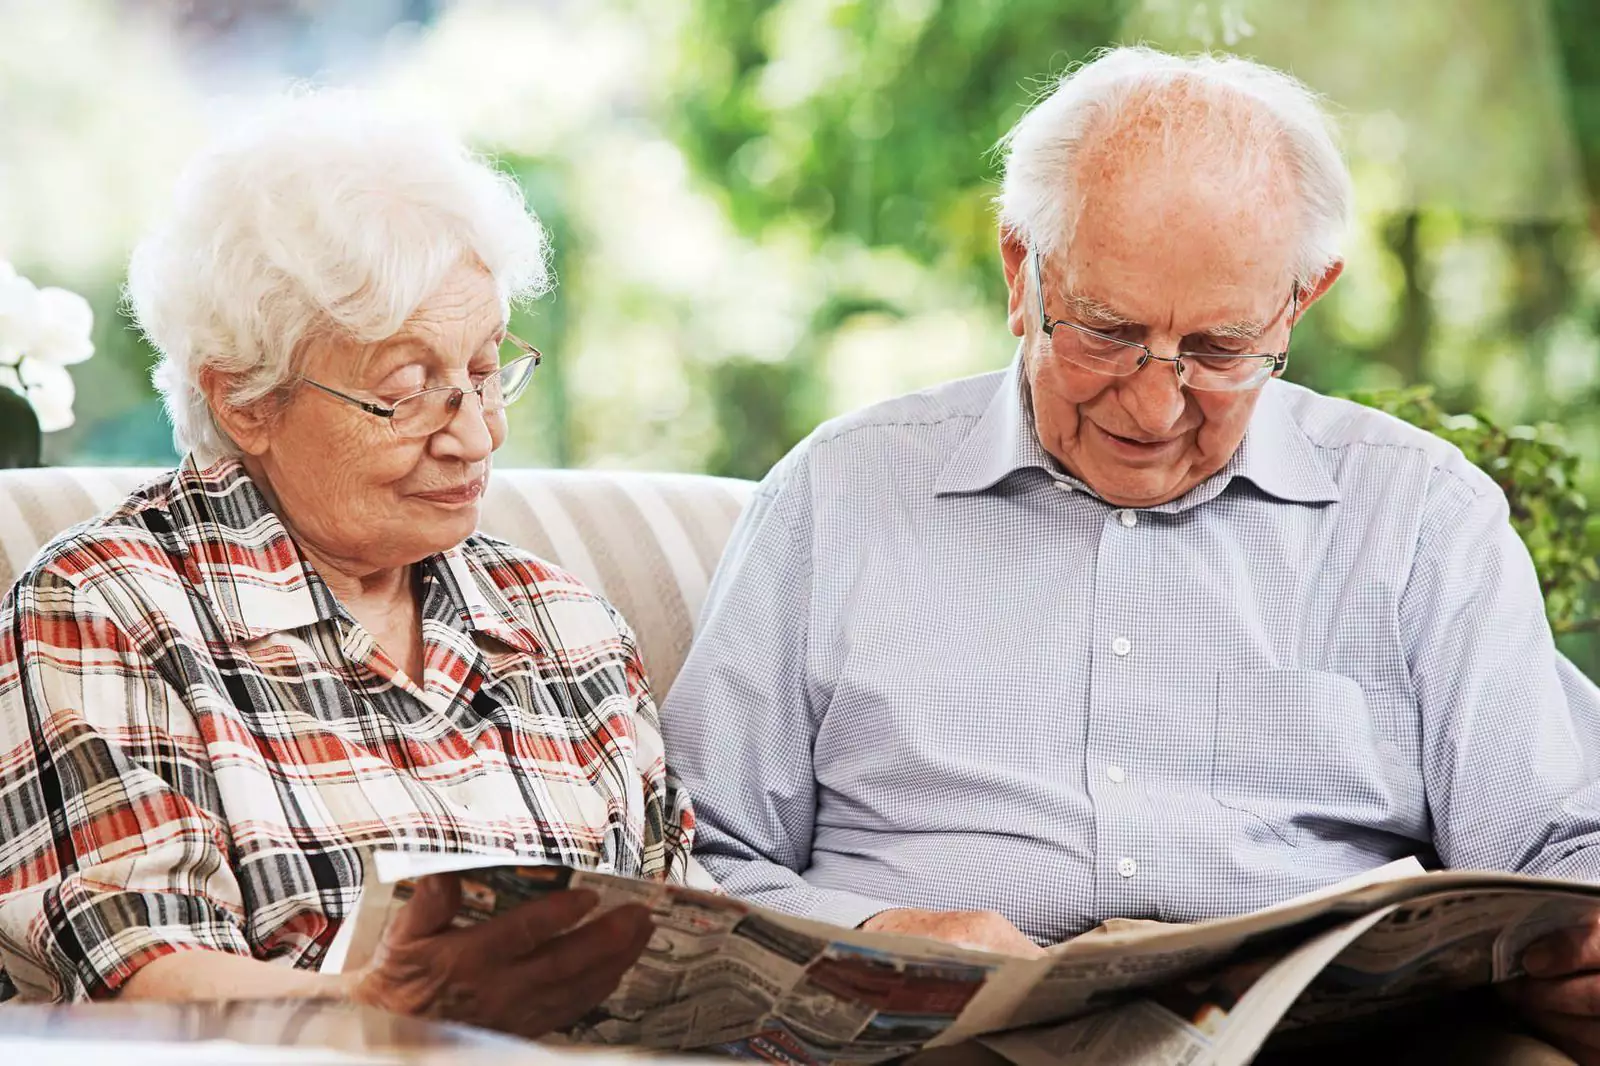 Кислородная терапия может улучшить состояние пожилых людей.